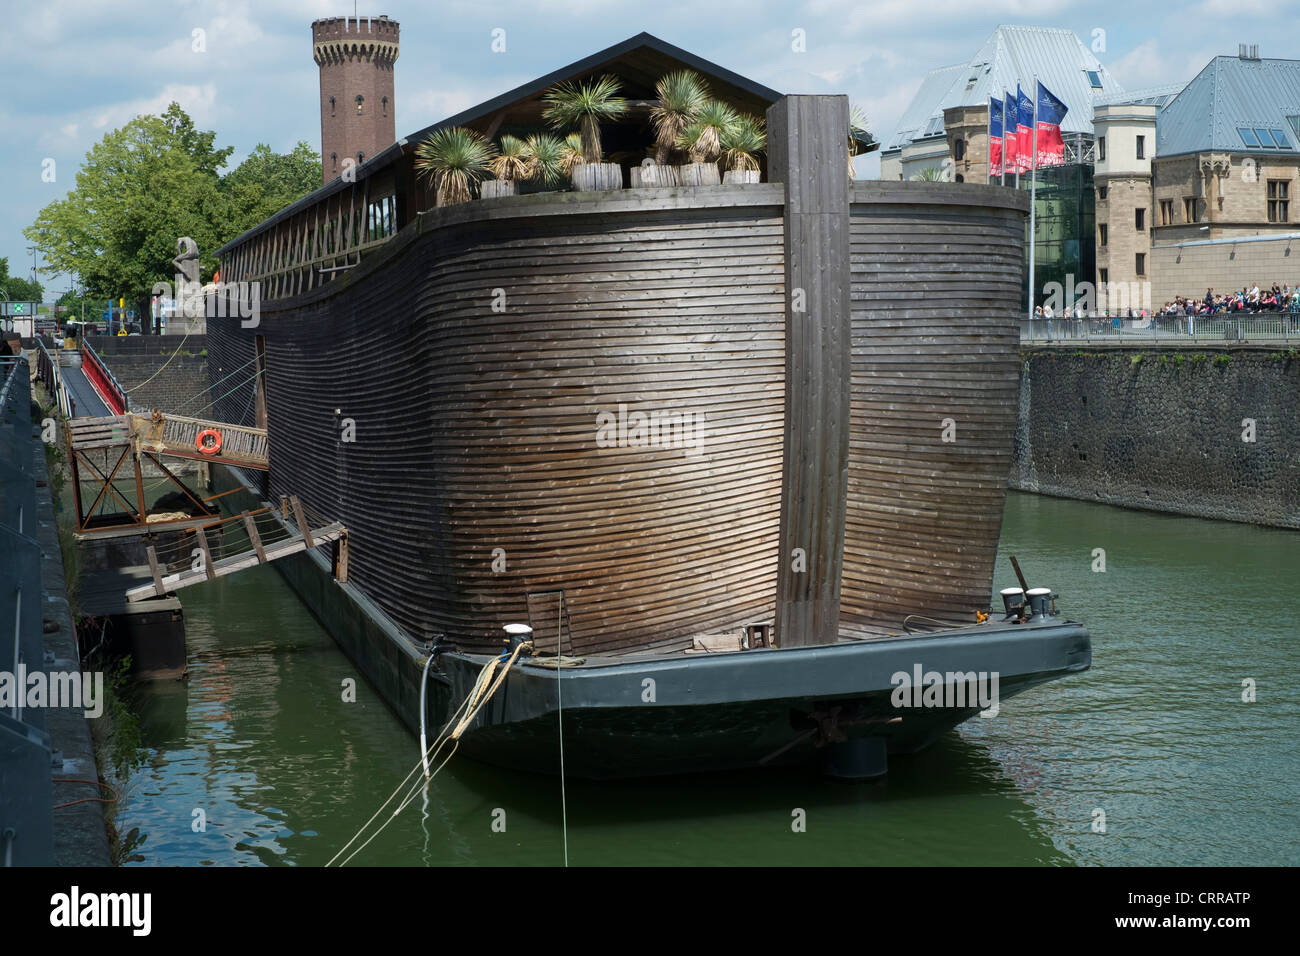 Blick auf Noahs Arche Holzschiff und religiösen Ausstellung in Köln  Stockfotografie - Alamy